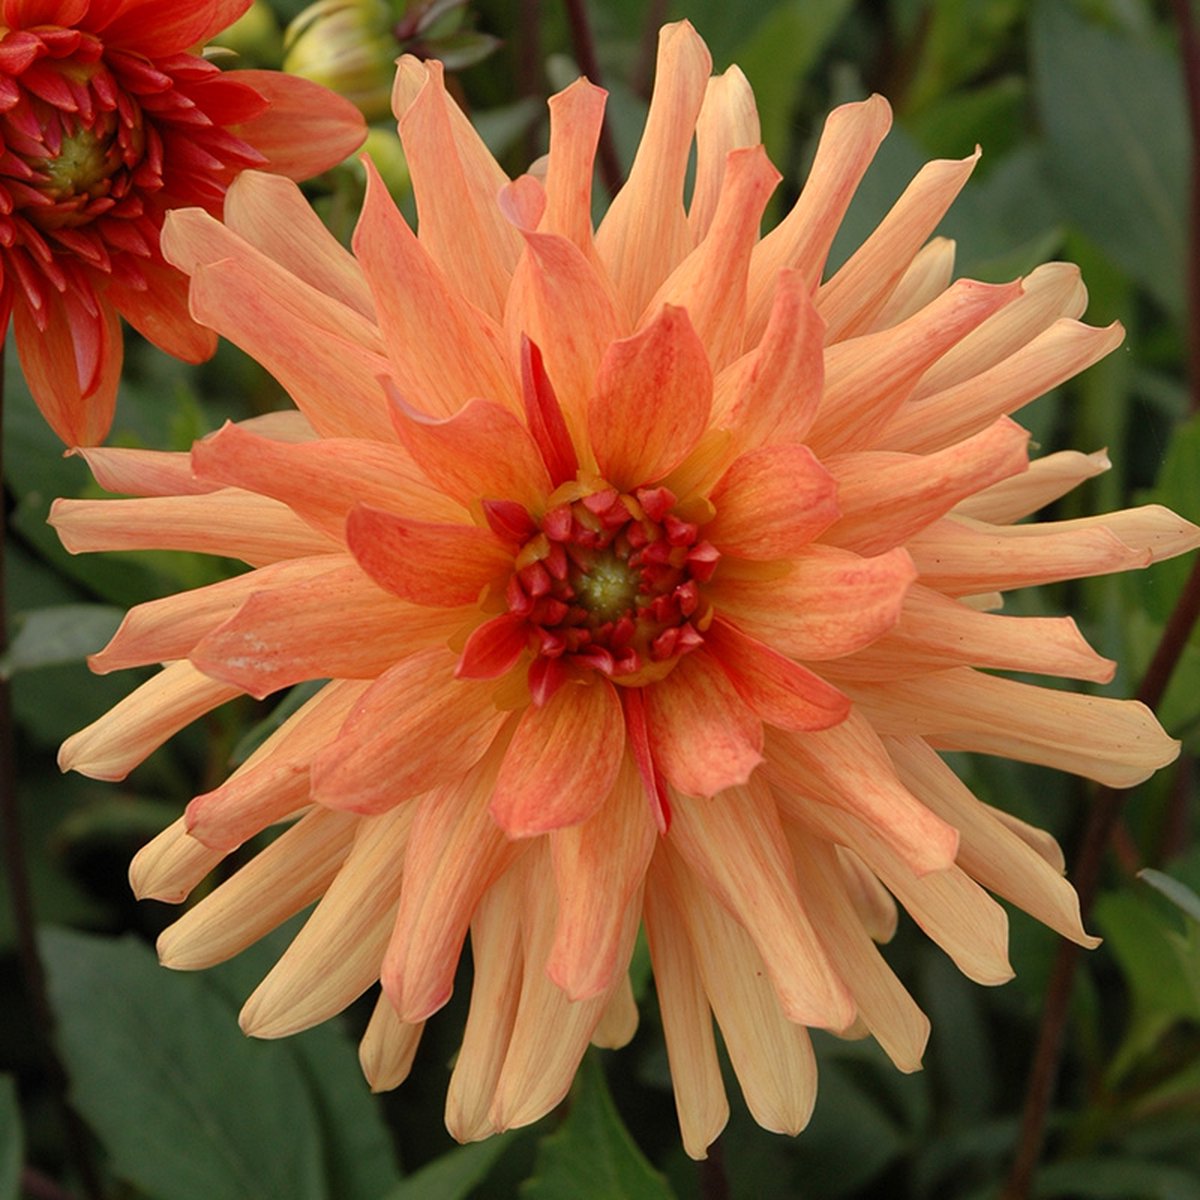 Dahlia Orange Pygmy | 1 stuk | Cactus Dahlia | Knol | Geschikt voor in Pot | Oranje | Dahlia Knollen van Top Kwaliteit